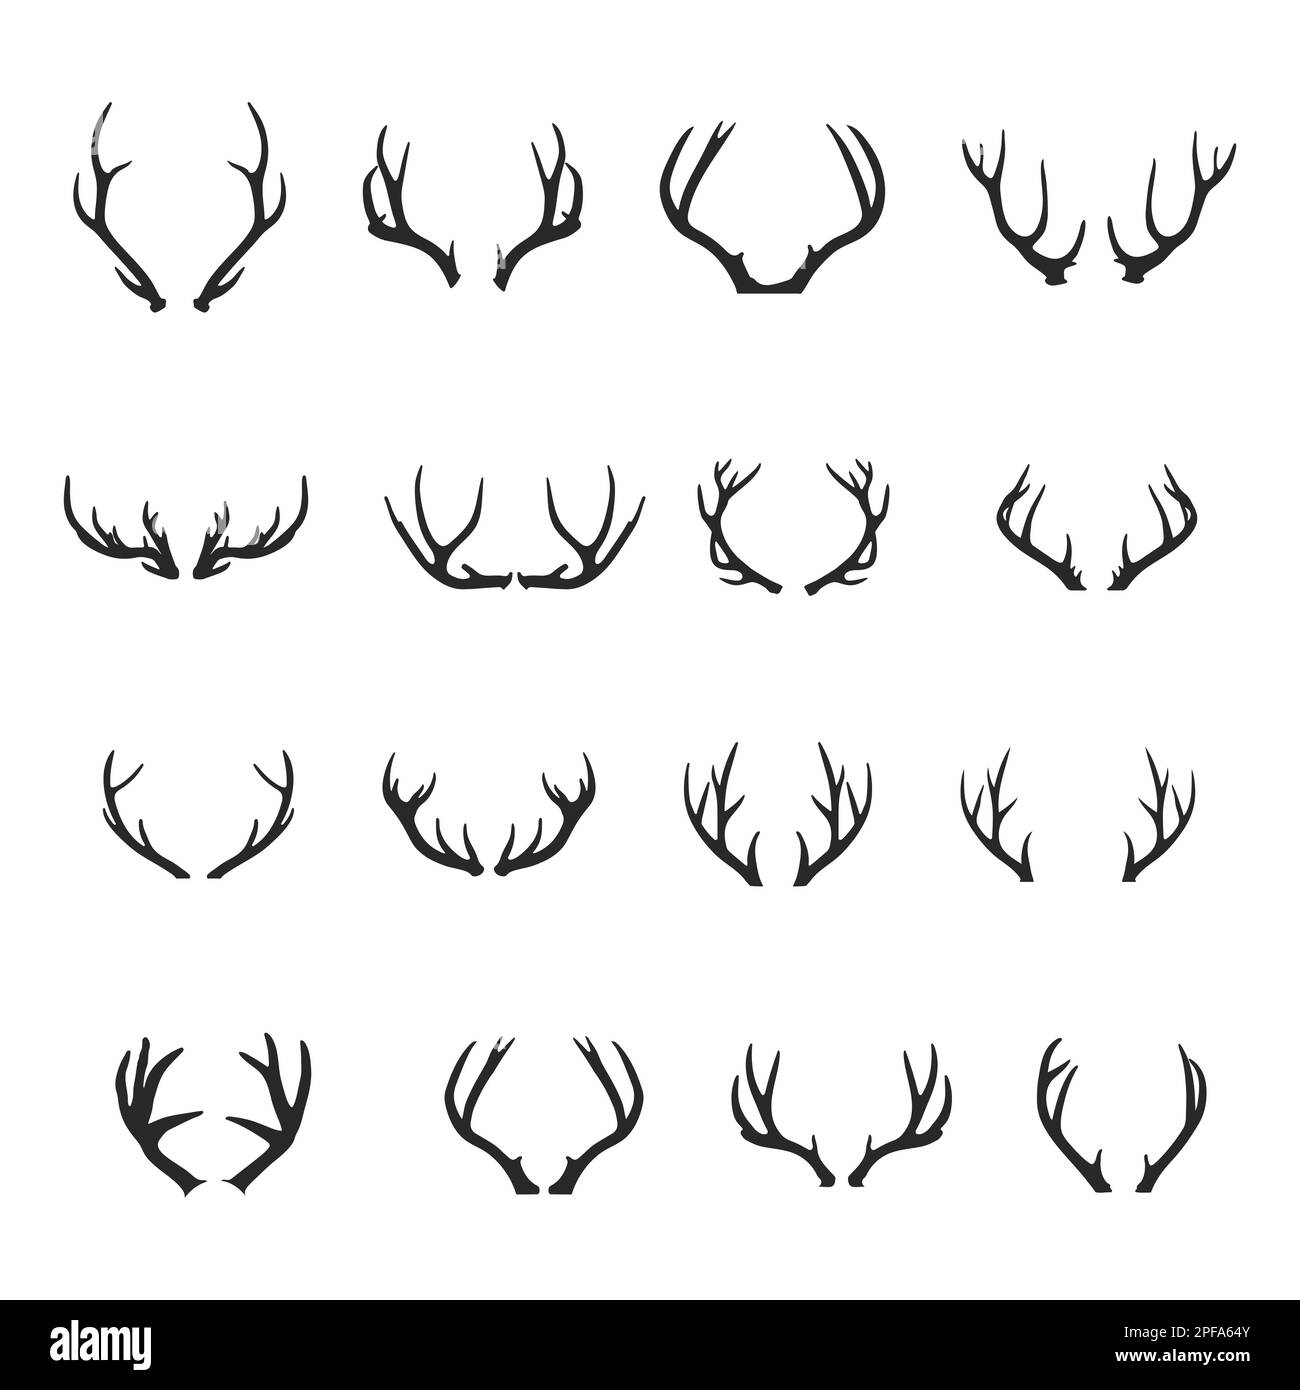 Deer Antlers silhouette set, Deer antlers icon set Stock Vector Image ...